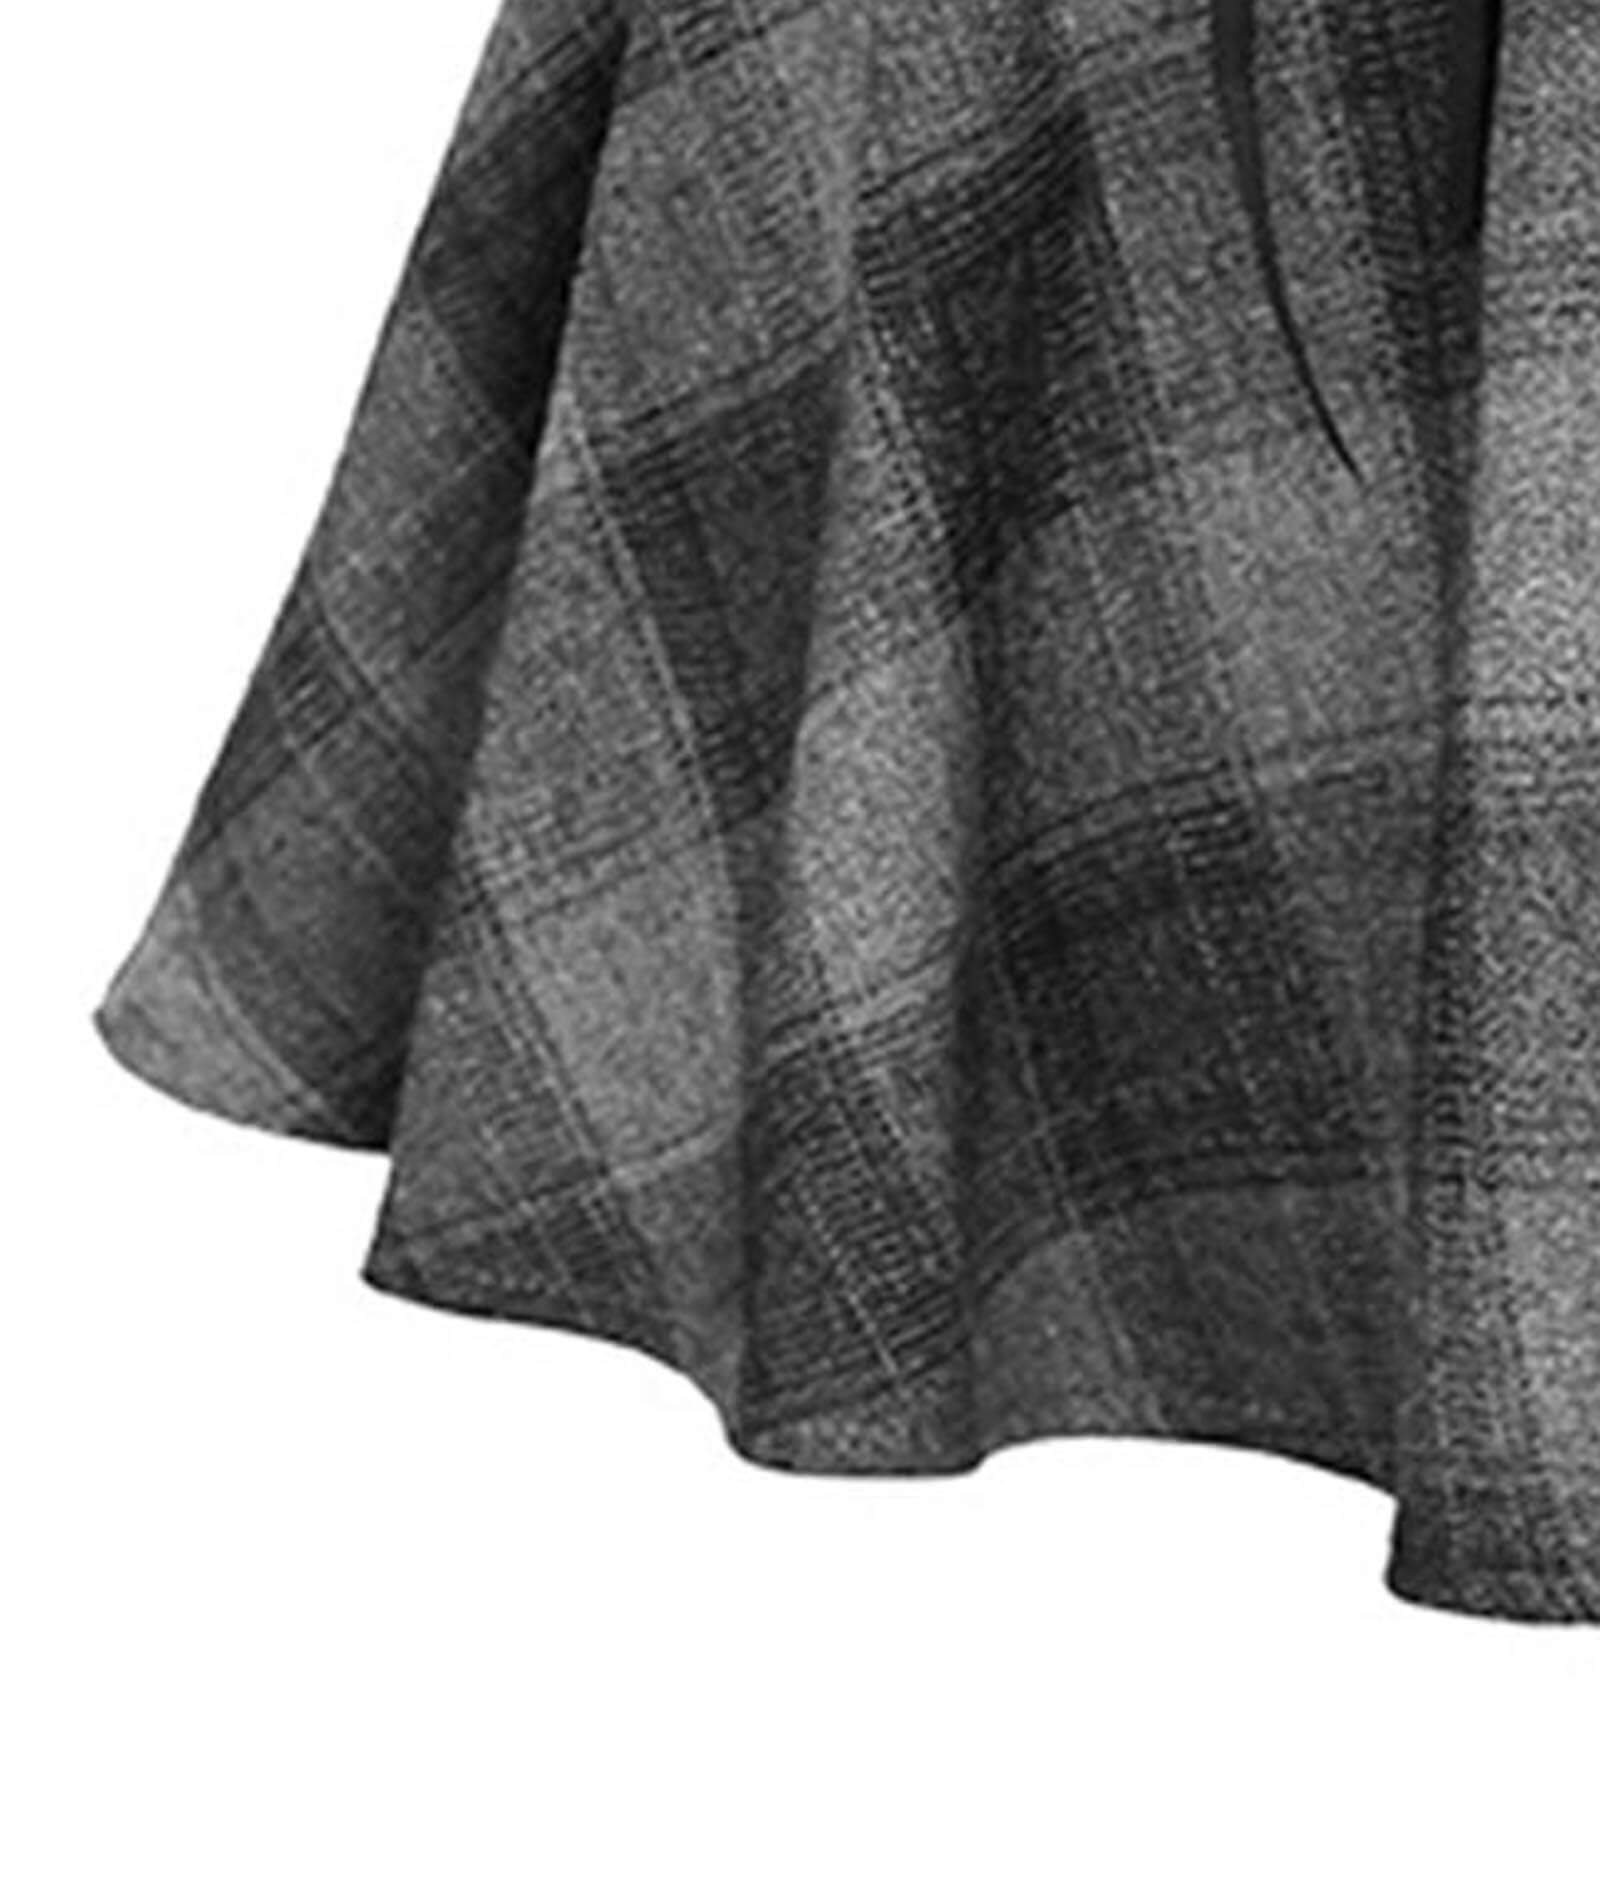  Women's Elegant Plaid Pleated Skirt Versatile Stretchy A-line School Skirt Uniform Mini Skater Skirt